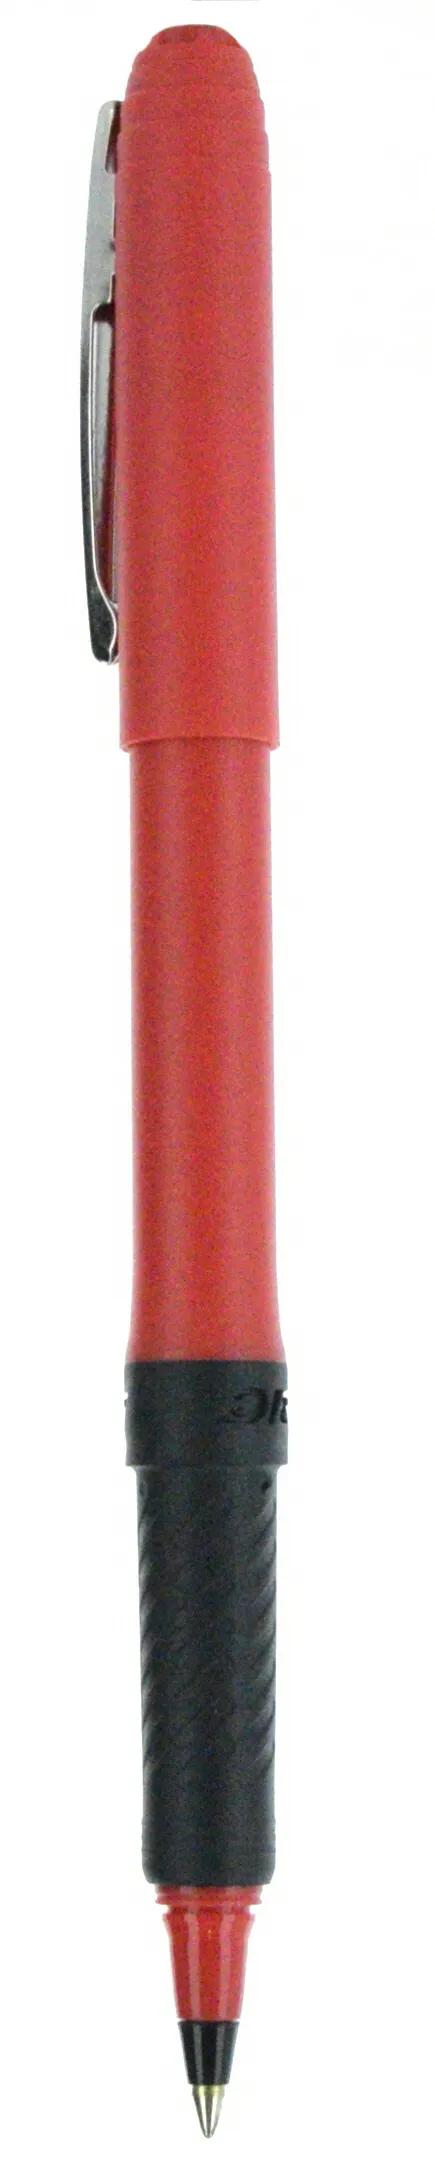 BIC® Grip Roller Pen 78 of 147